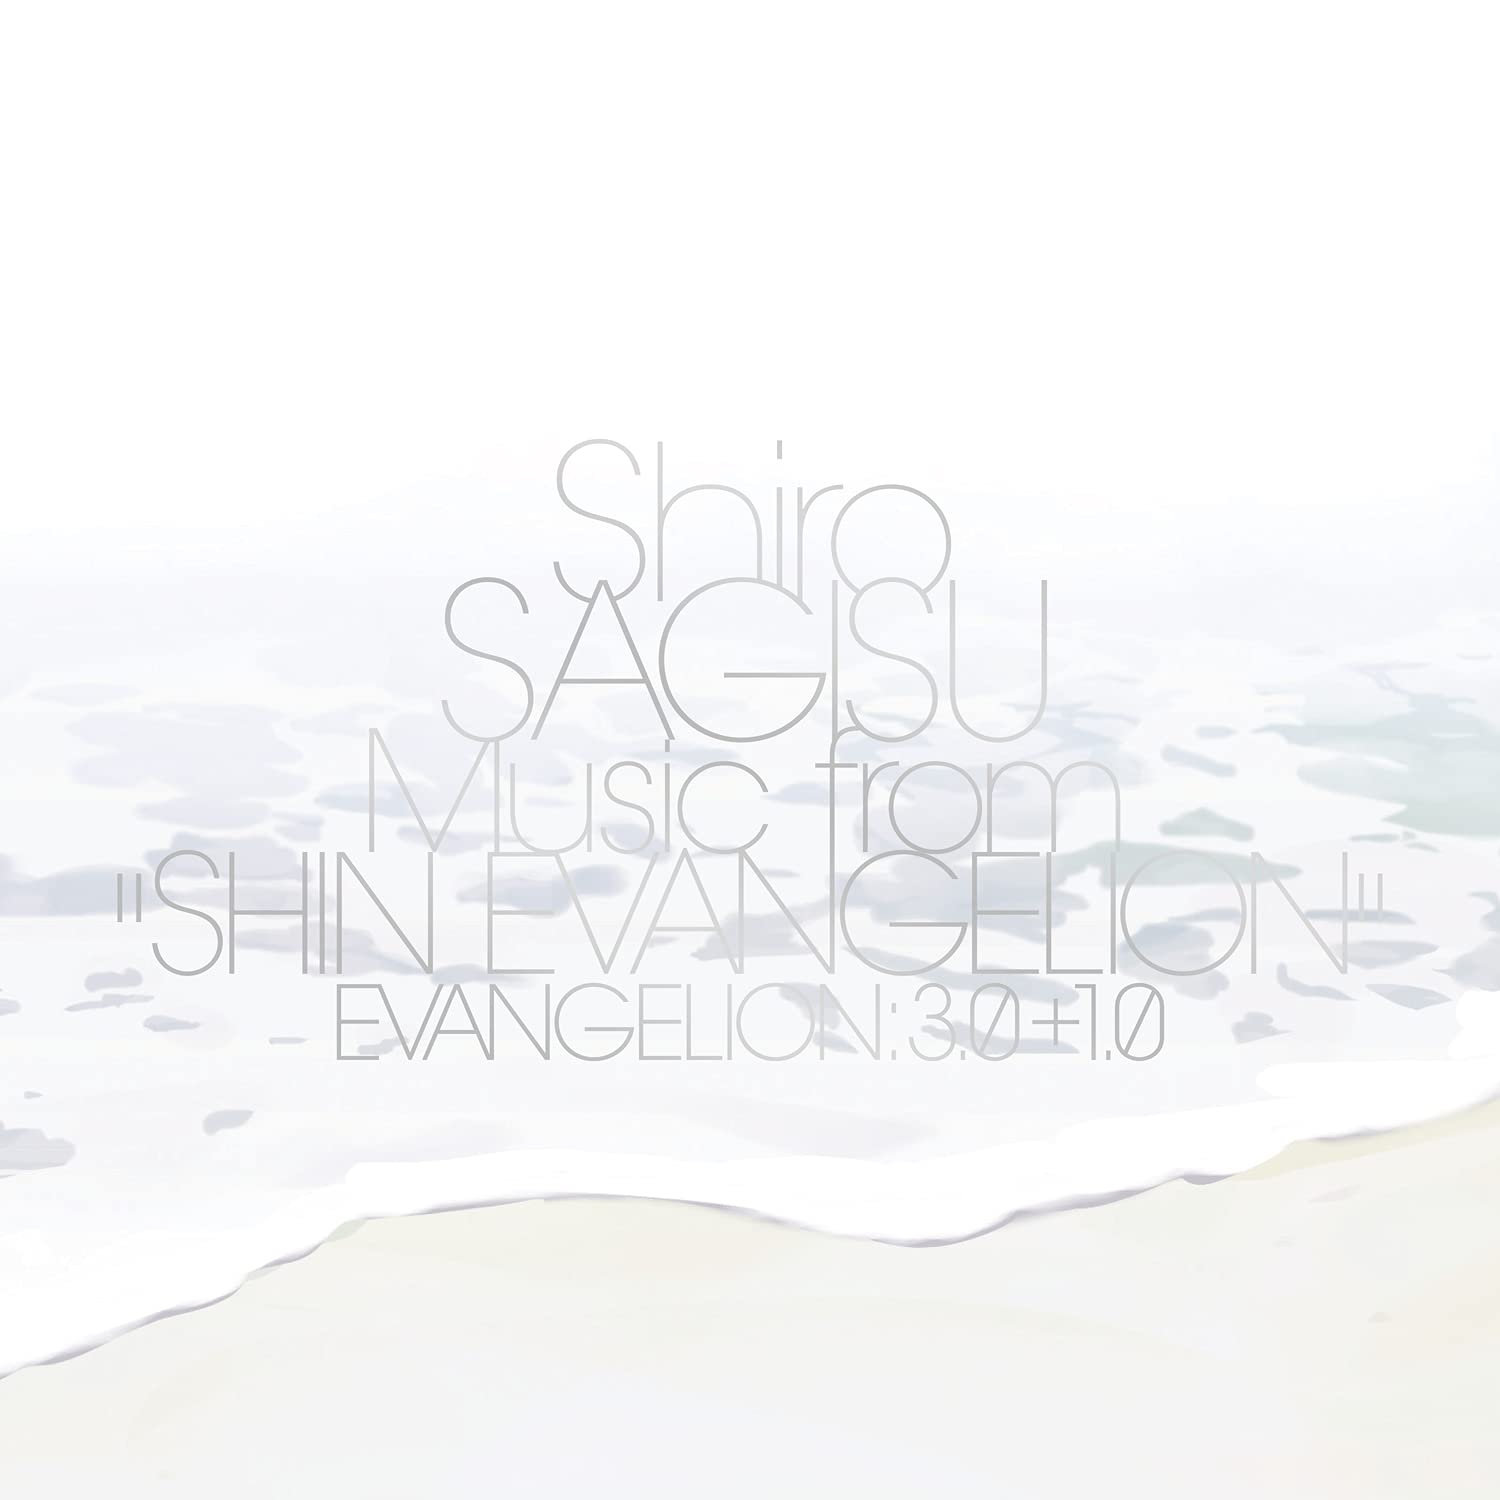 Shiro Sagisu Music From Shin Evangelion Evangelion: 3.0+1.0.